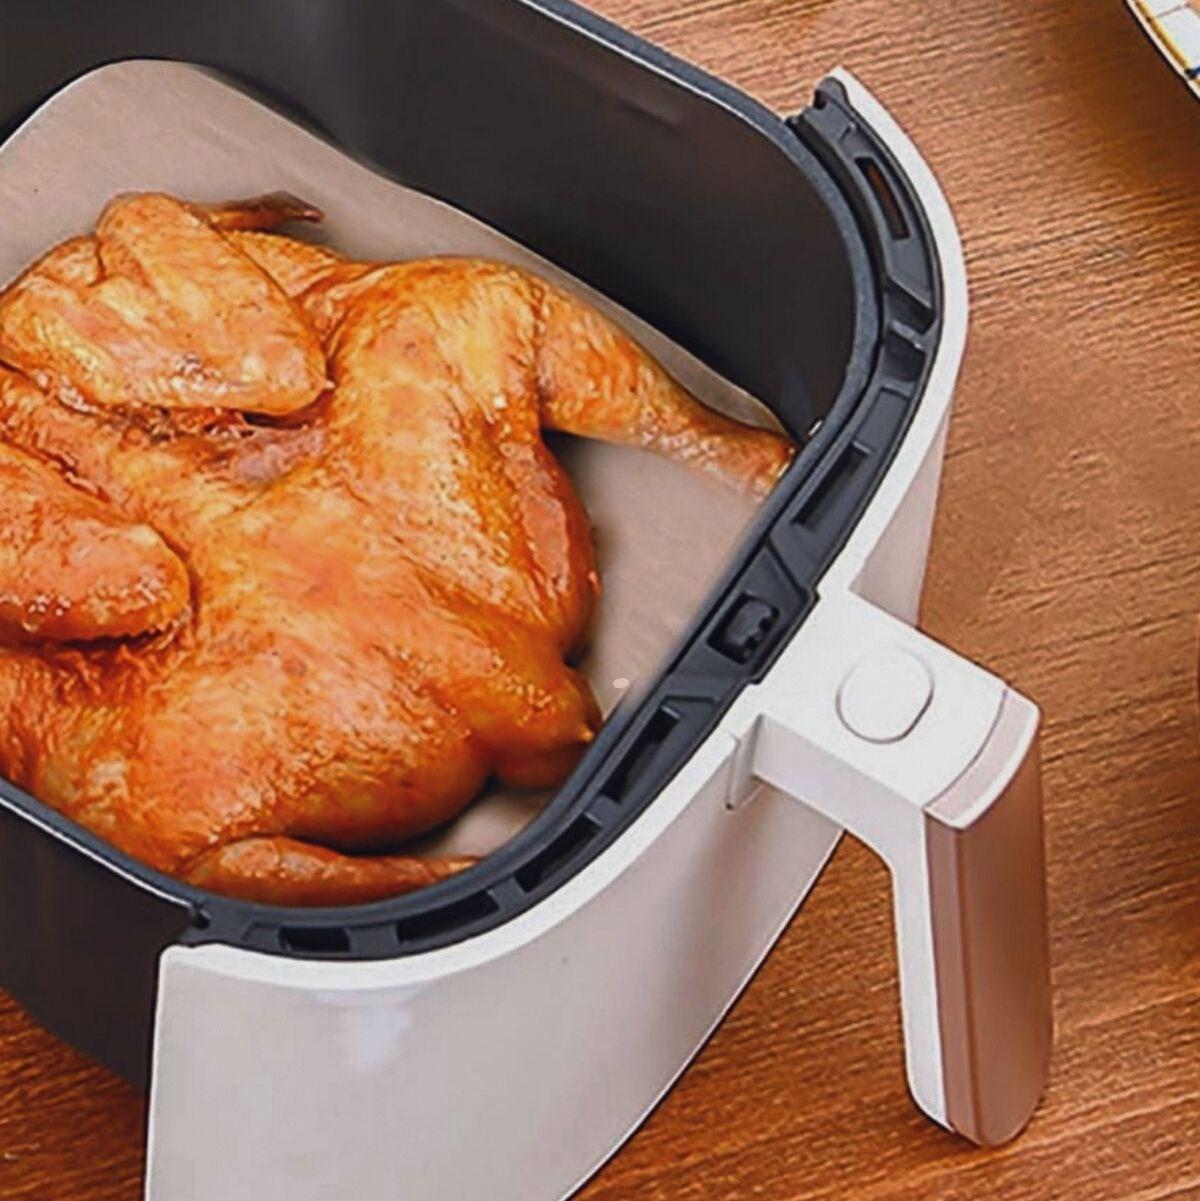 CLZ174 100 LÜ Deliksiz Düz Kare Air Fryer Pişirme Kağıdı Tek Kullanımlık Hava -Yağ Geçirmez Yapışmaz Kağıt